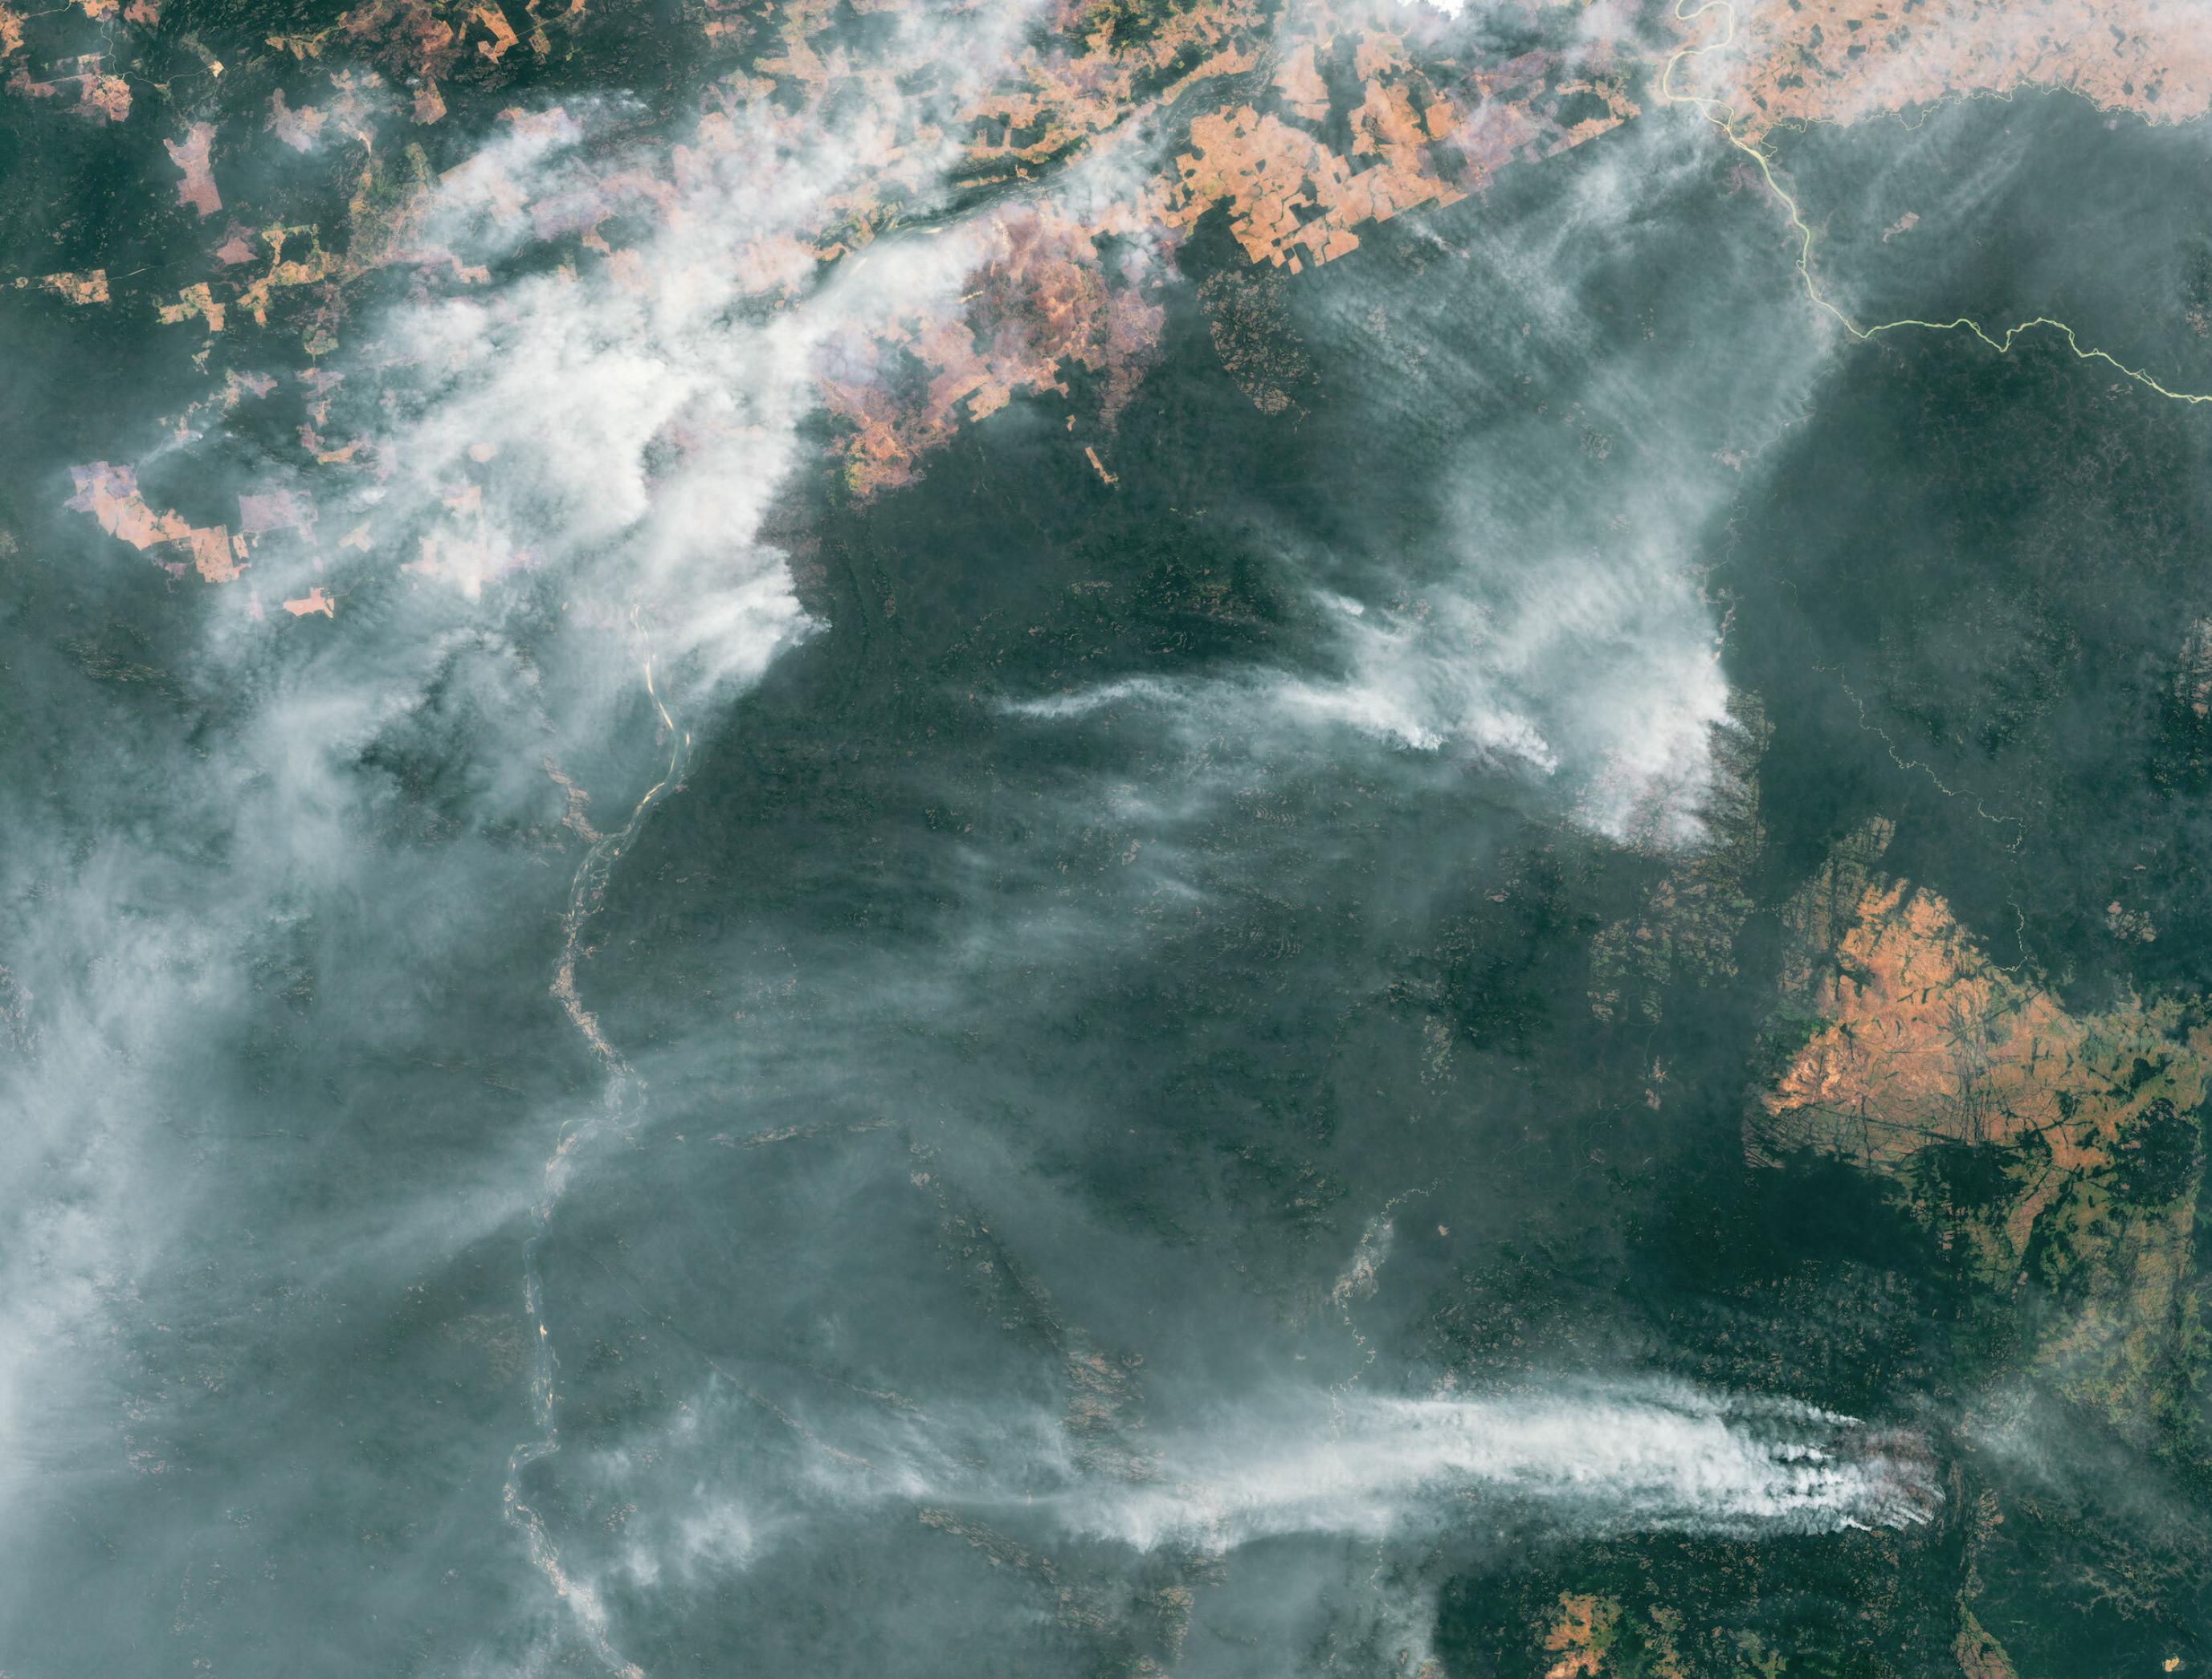 Satellitenbild zeigt Amazonas-Regenwald mit riesigen Rauchschwaden aus Waldbränden.